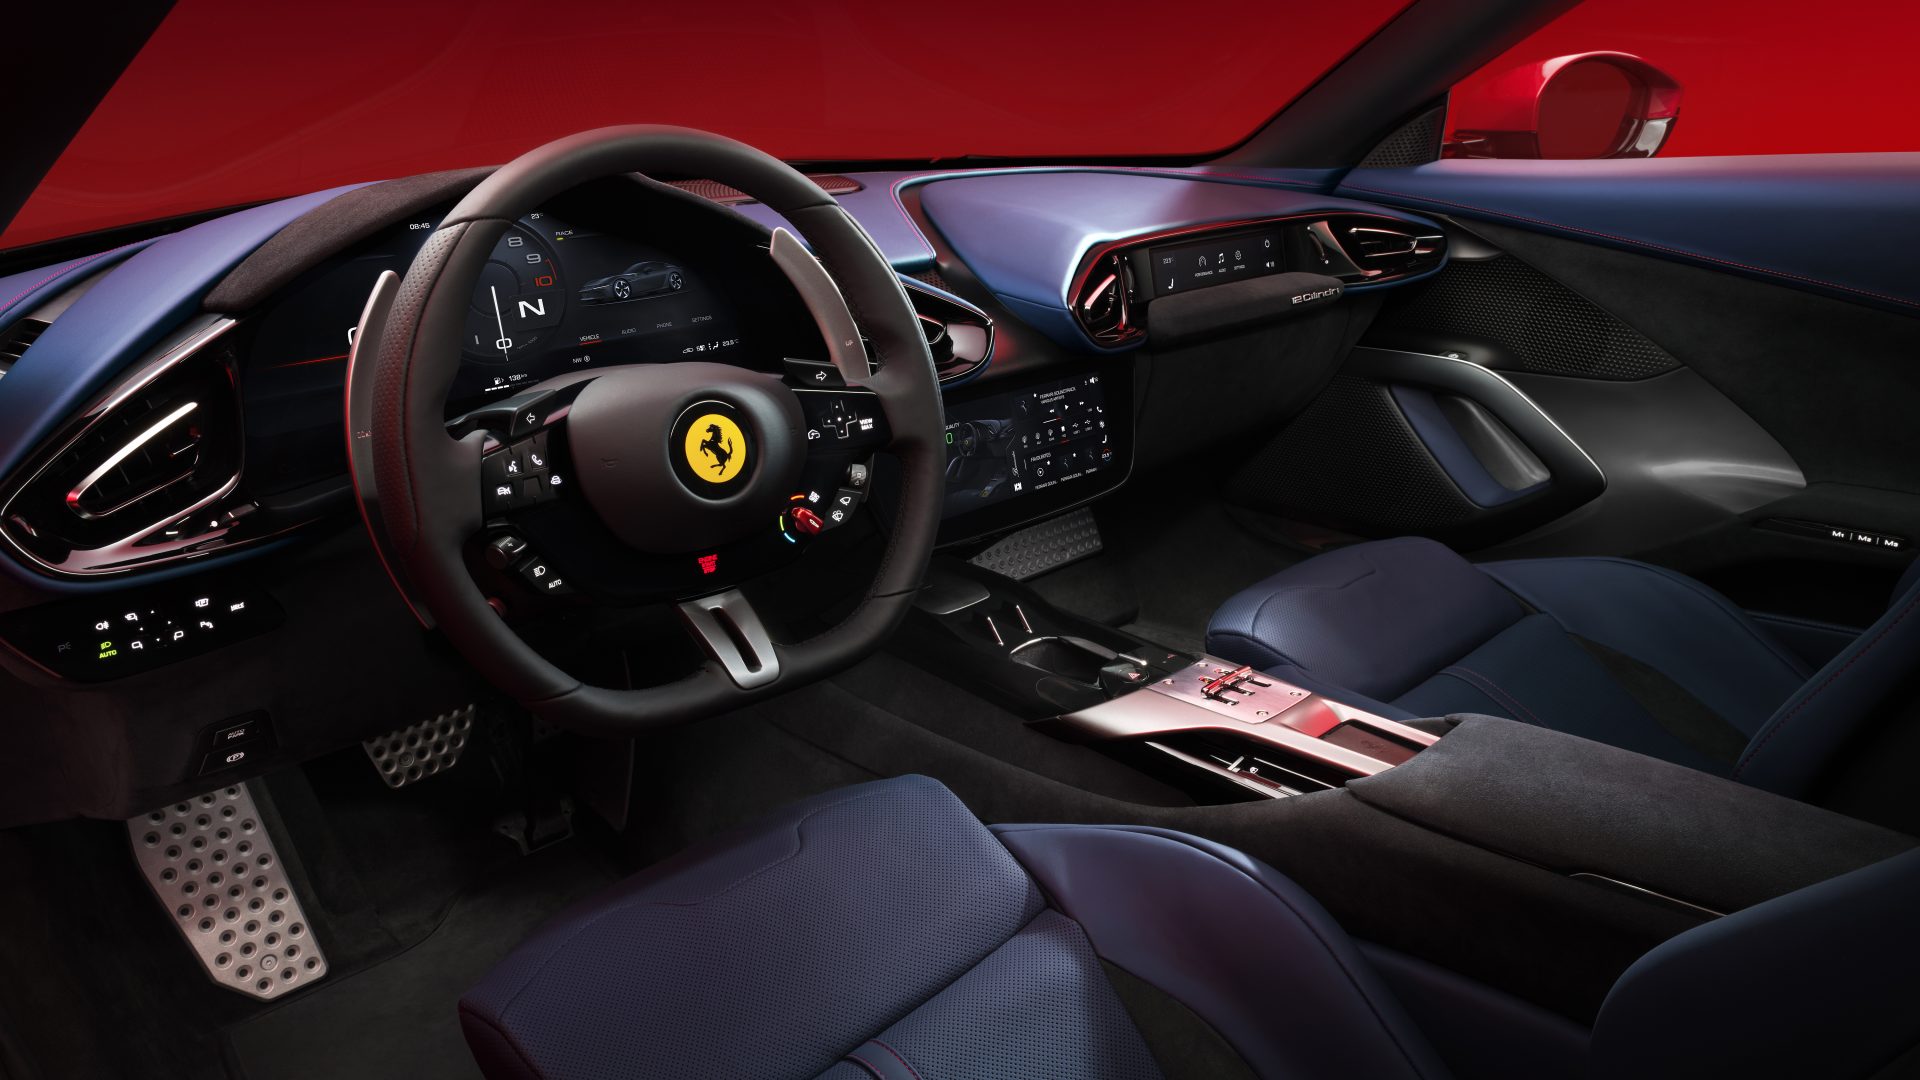 New Ferrari V12 ext 08 red media 9d7a00fa 5501 4caa 831e 162fa725419d Ferrari 12Cilindri : Μια σύγχρονη Daytona